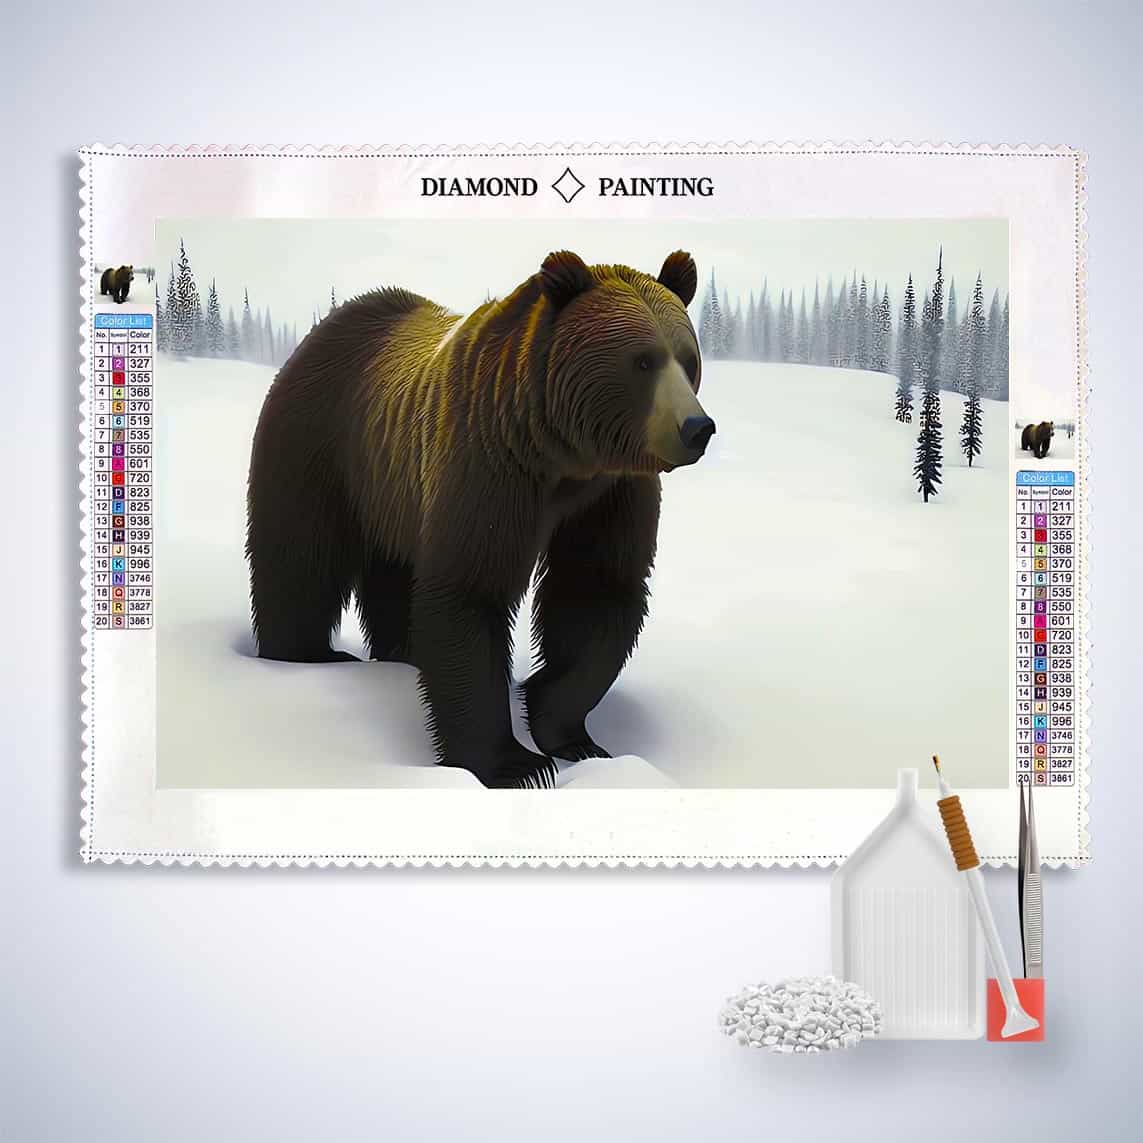 Diamond Painting - Braunbär im Winter - gedruckt in Ultra-HD - Bär, Horizontal, Tiere